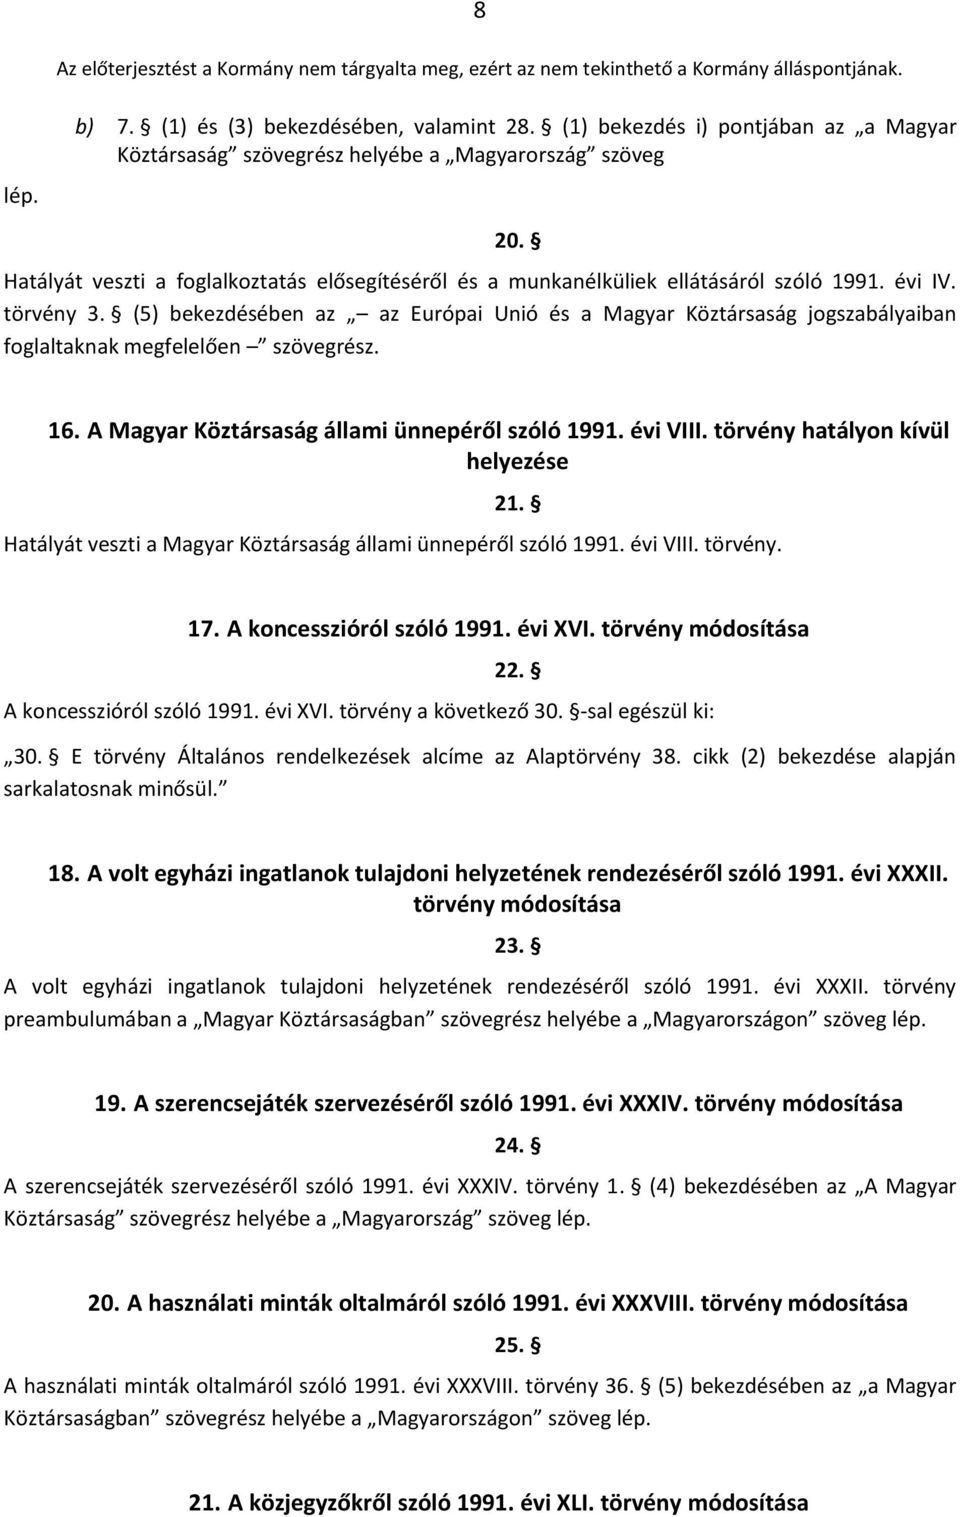 törvény 3. (5) bekezdésében az az Európai Unió és a Magyar Köztársaság jogszabályaiban foglaltaknak megfelelően szövegrész. 20. 16. A Magyar Köztársaság állami ünnepéről szóló 1991. évi VIII.